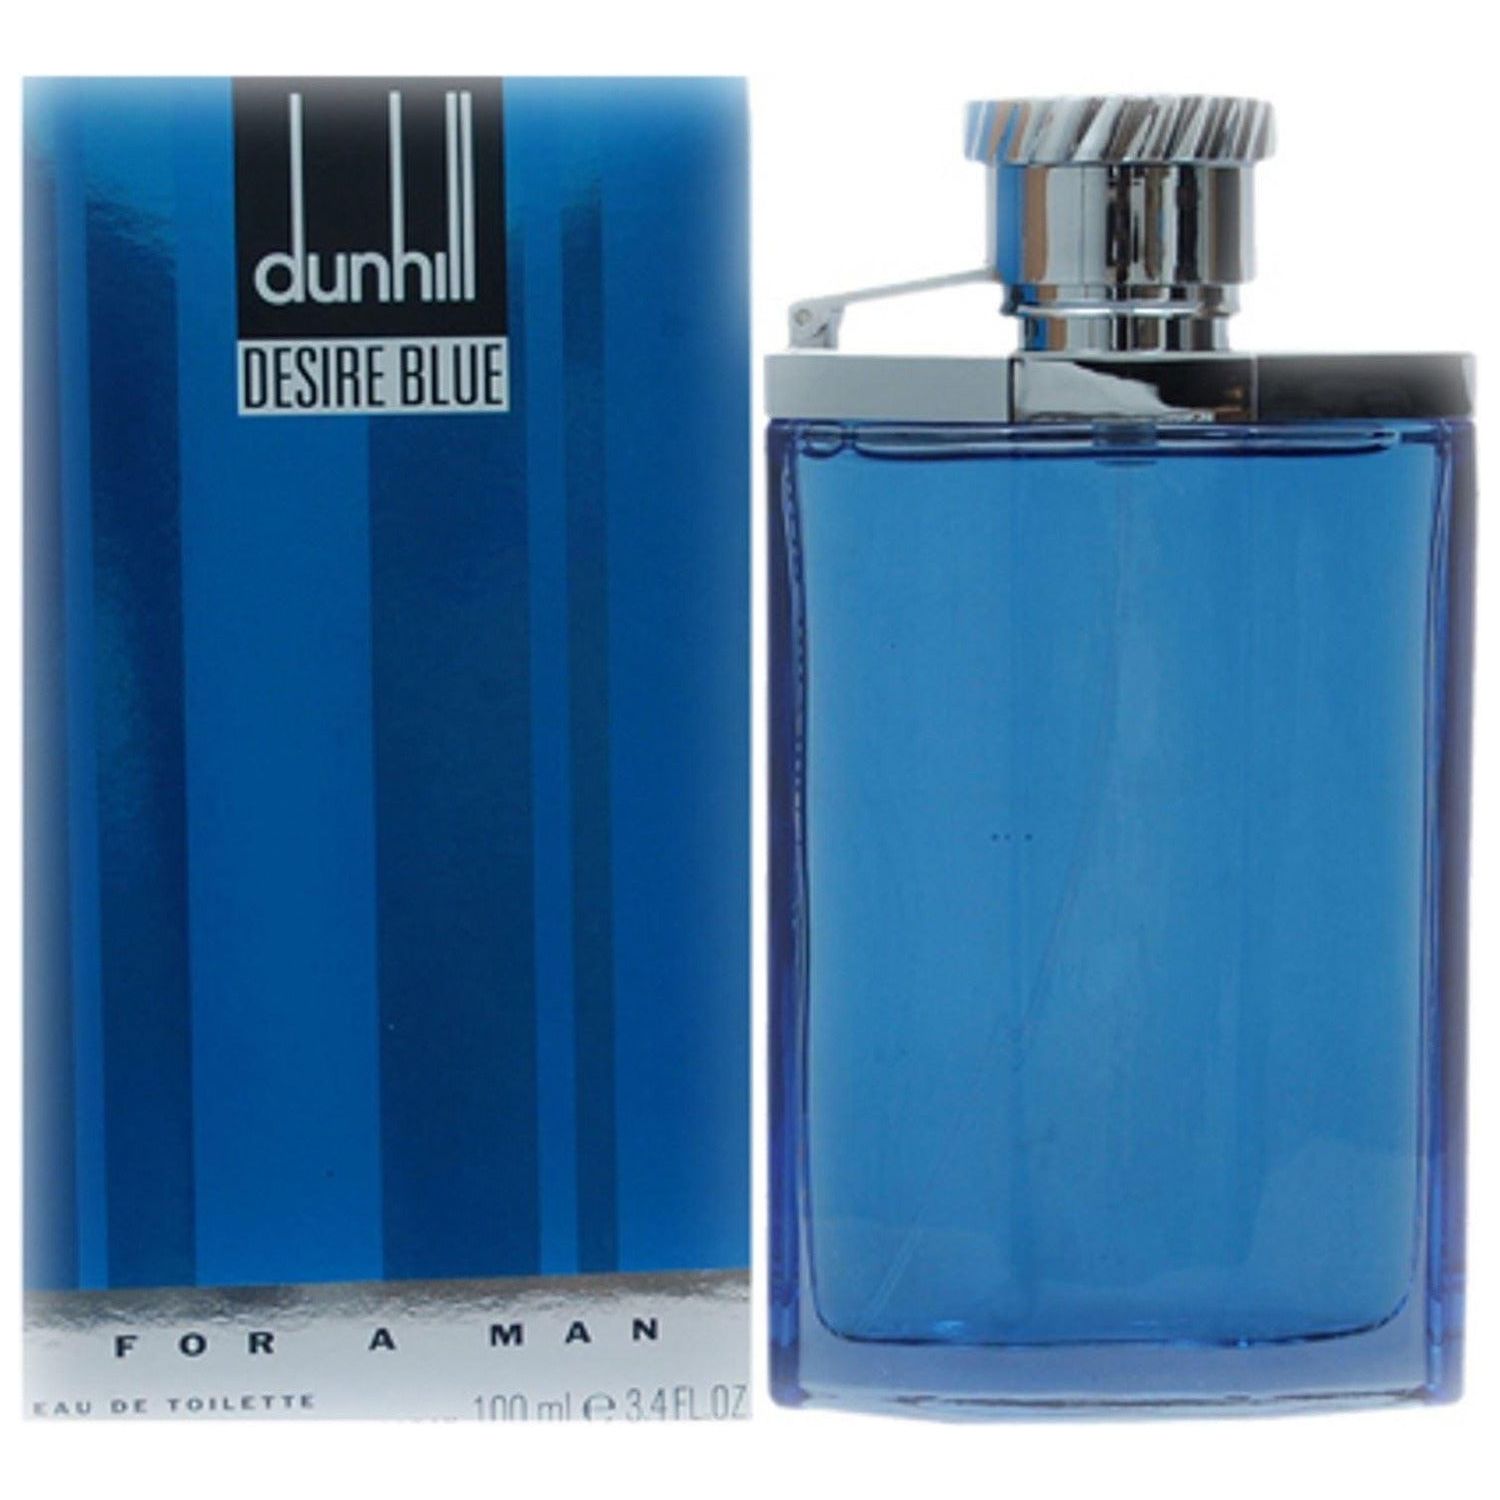 Parfum Blue Dunhill - Homecare24